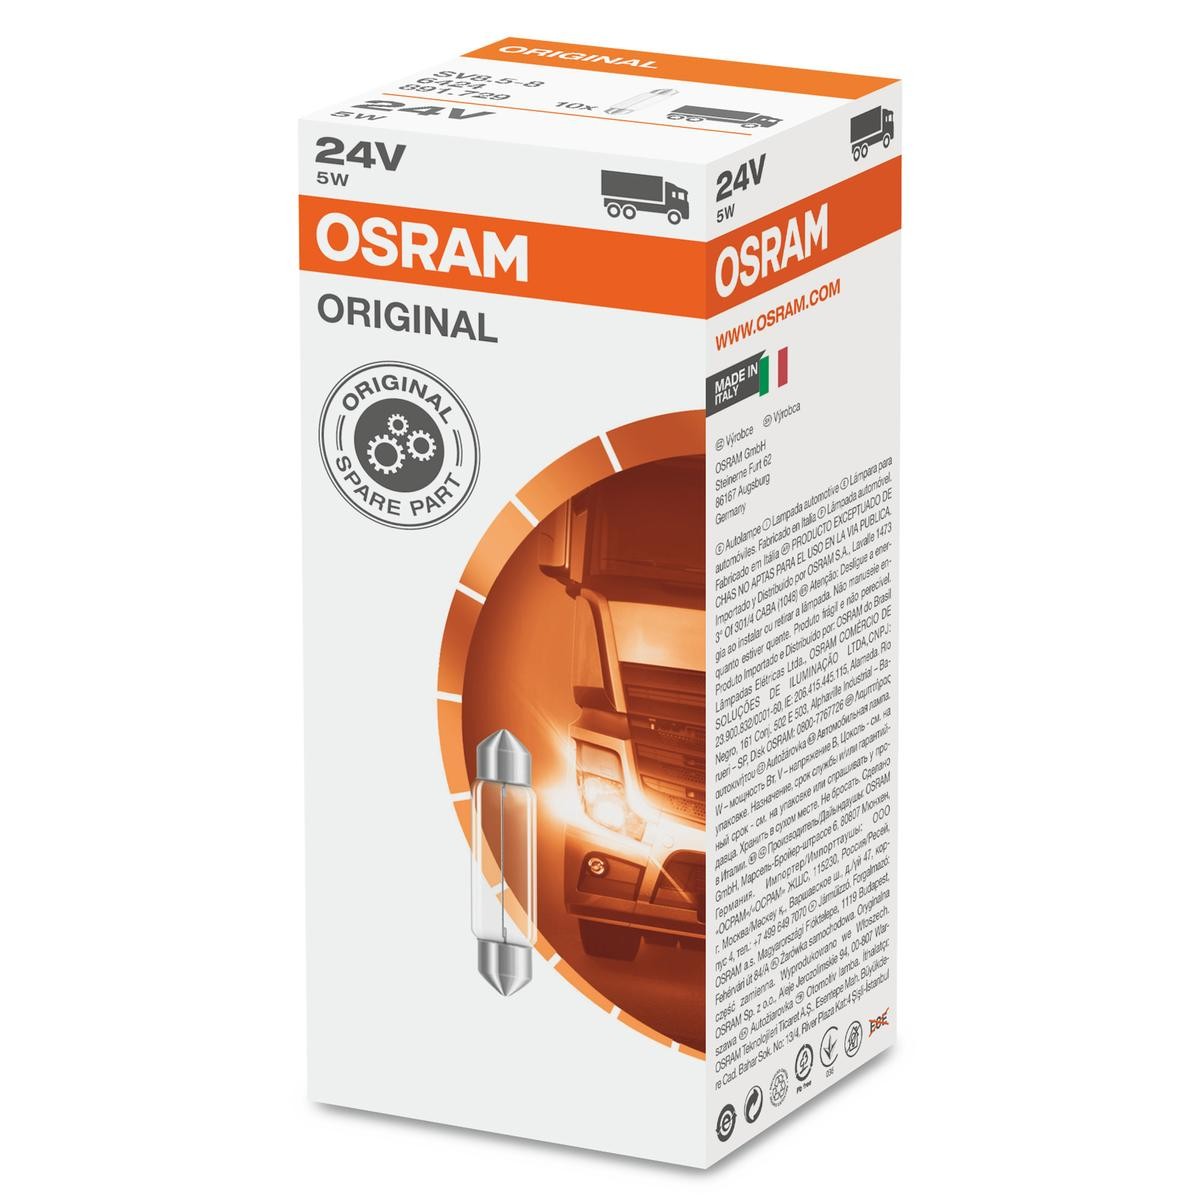 OSRAM ORIGINAL LINE 6424 Number plate light order